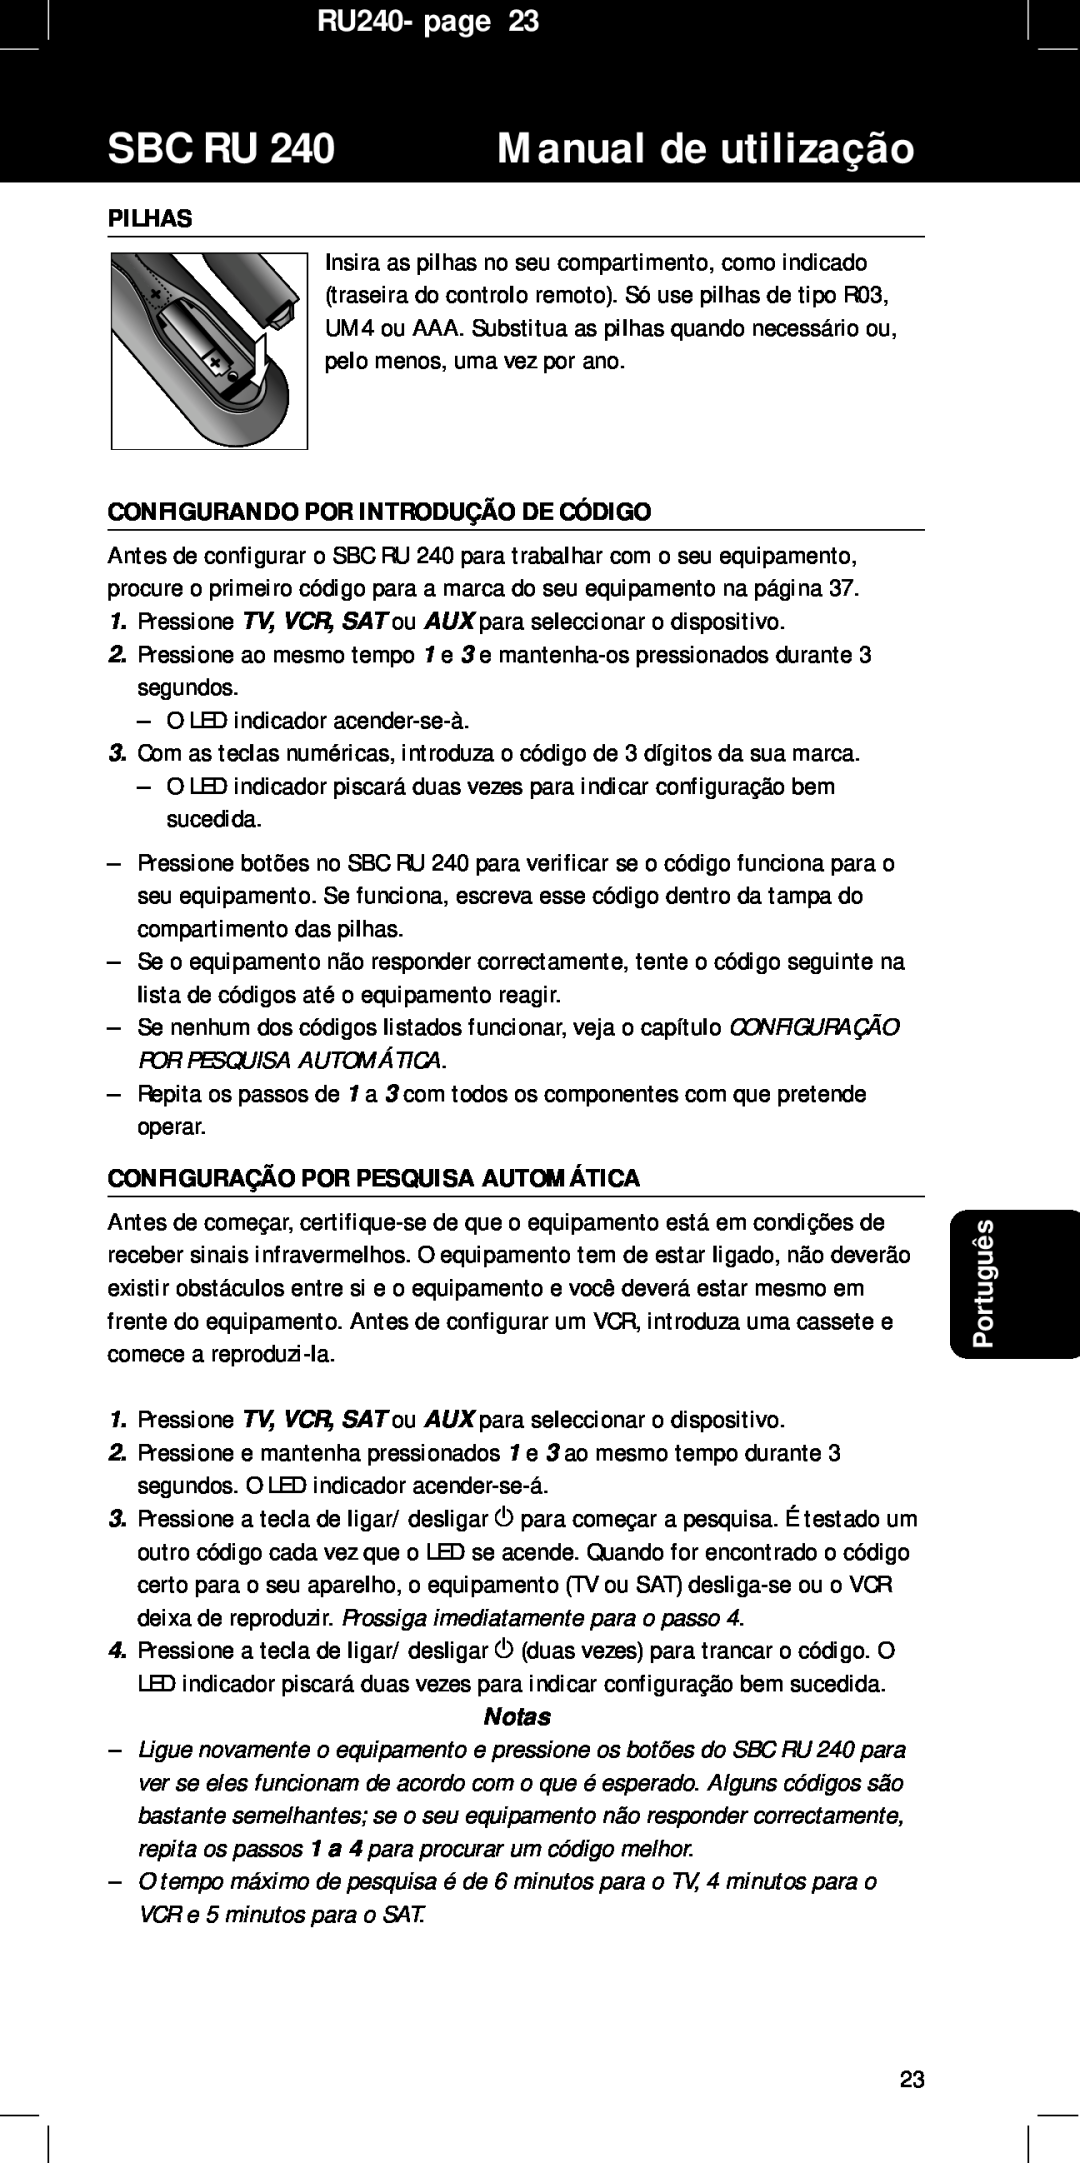 Philips manual Pilhas, Configurando Por Introdução De Código, Configuração Por Pesquisa Automática, Sbc Ru, RU240- page 